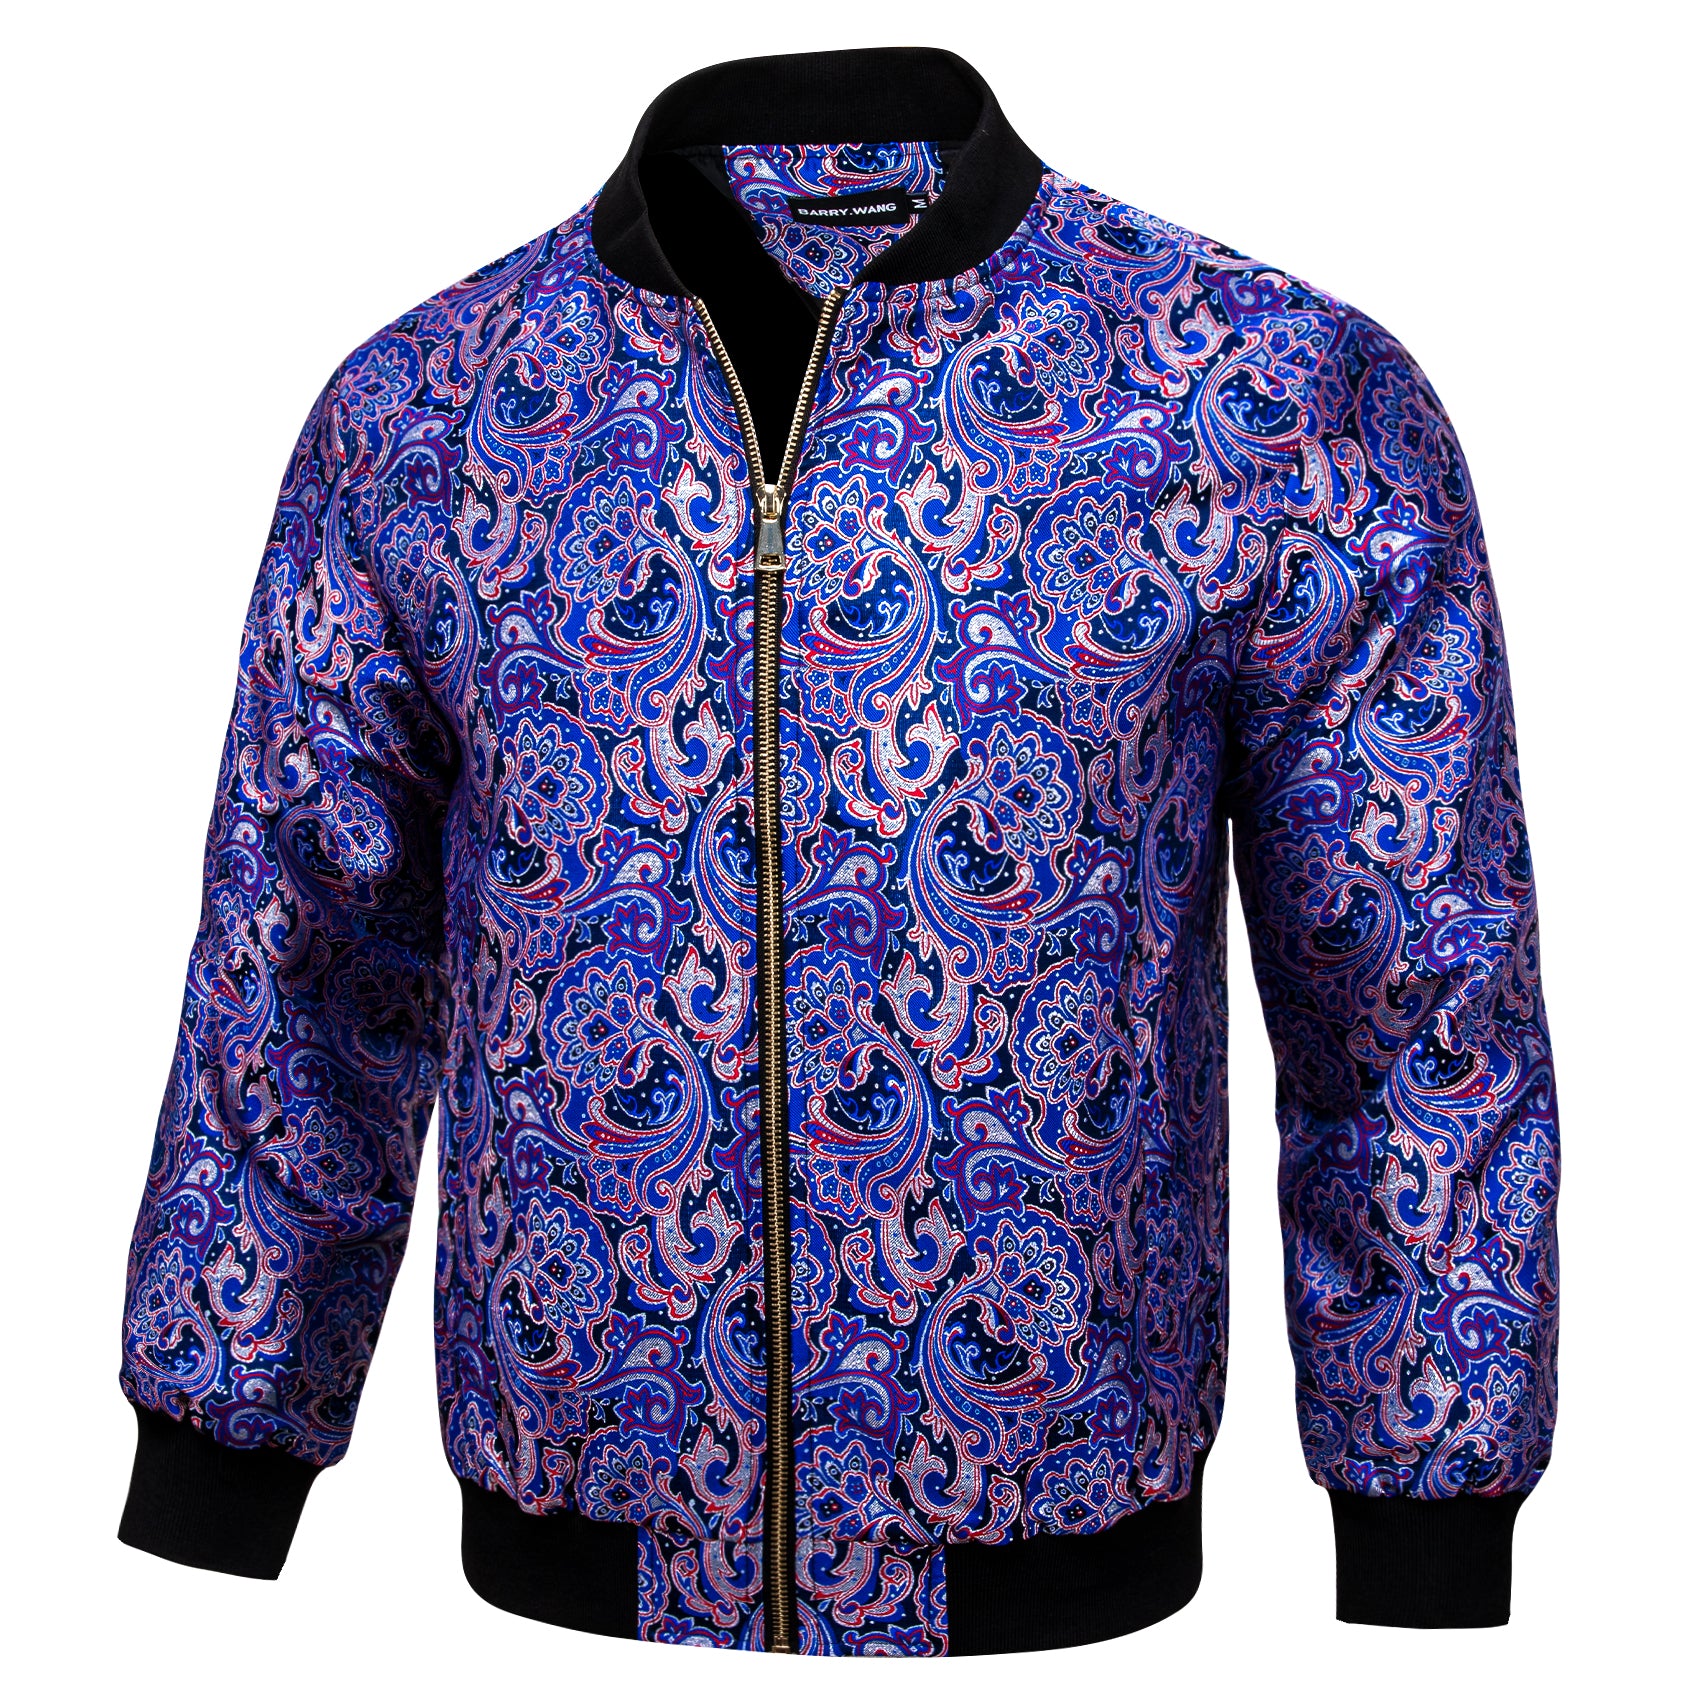 Mens Blue Purple Floral Jacquard Paisley Jacket